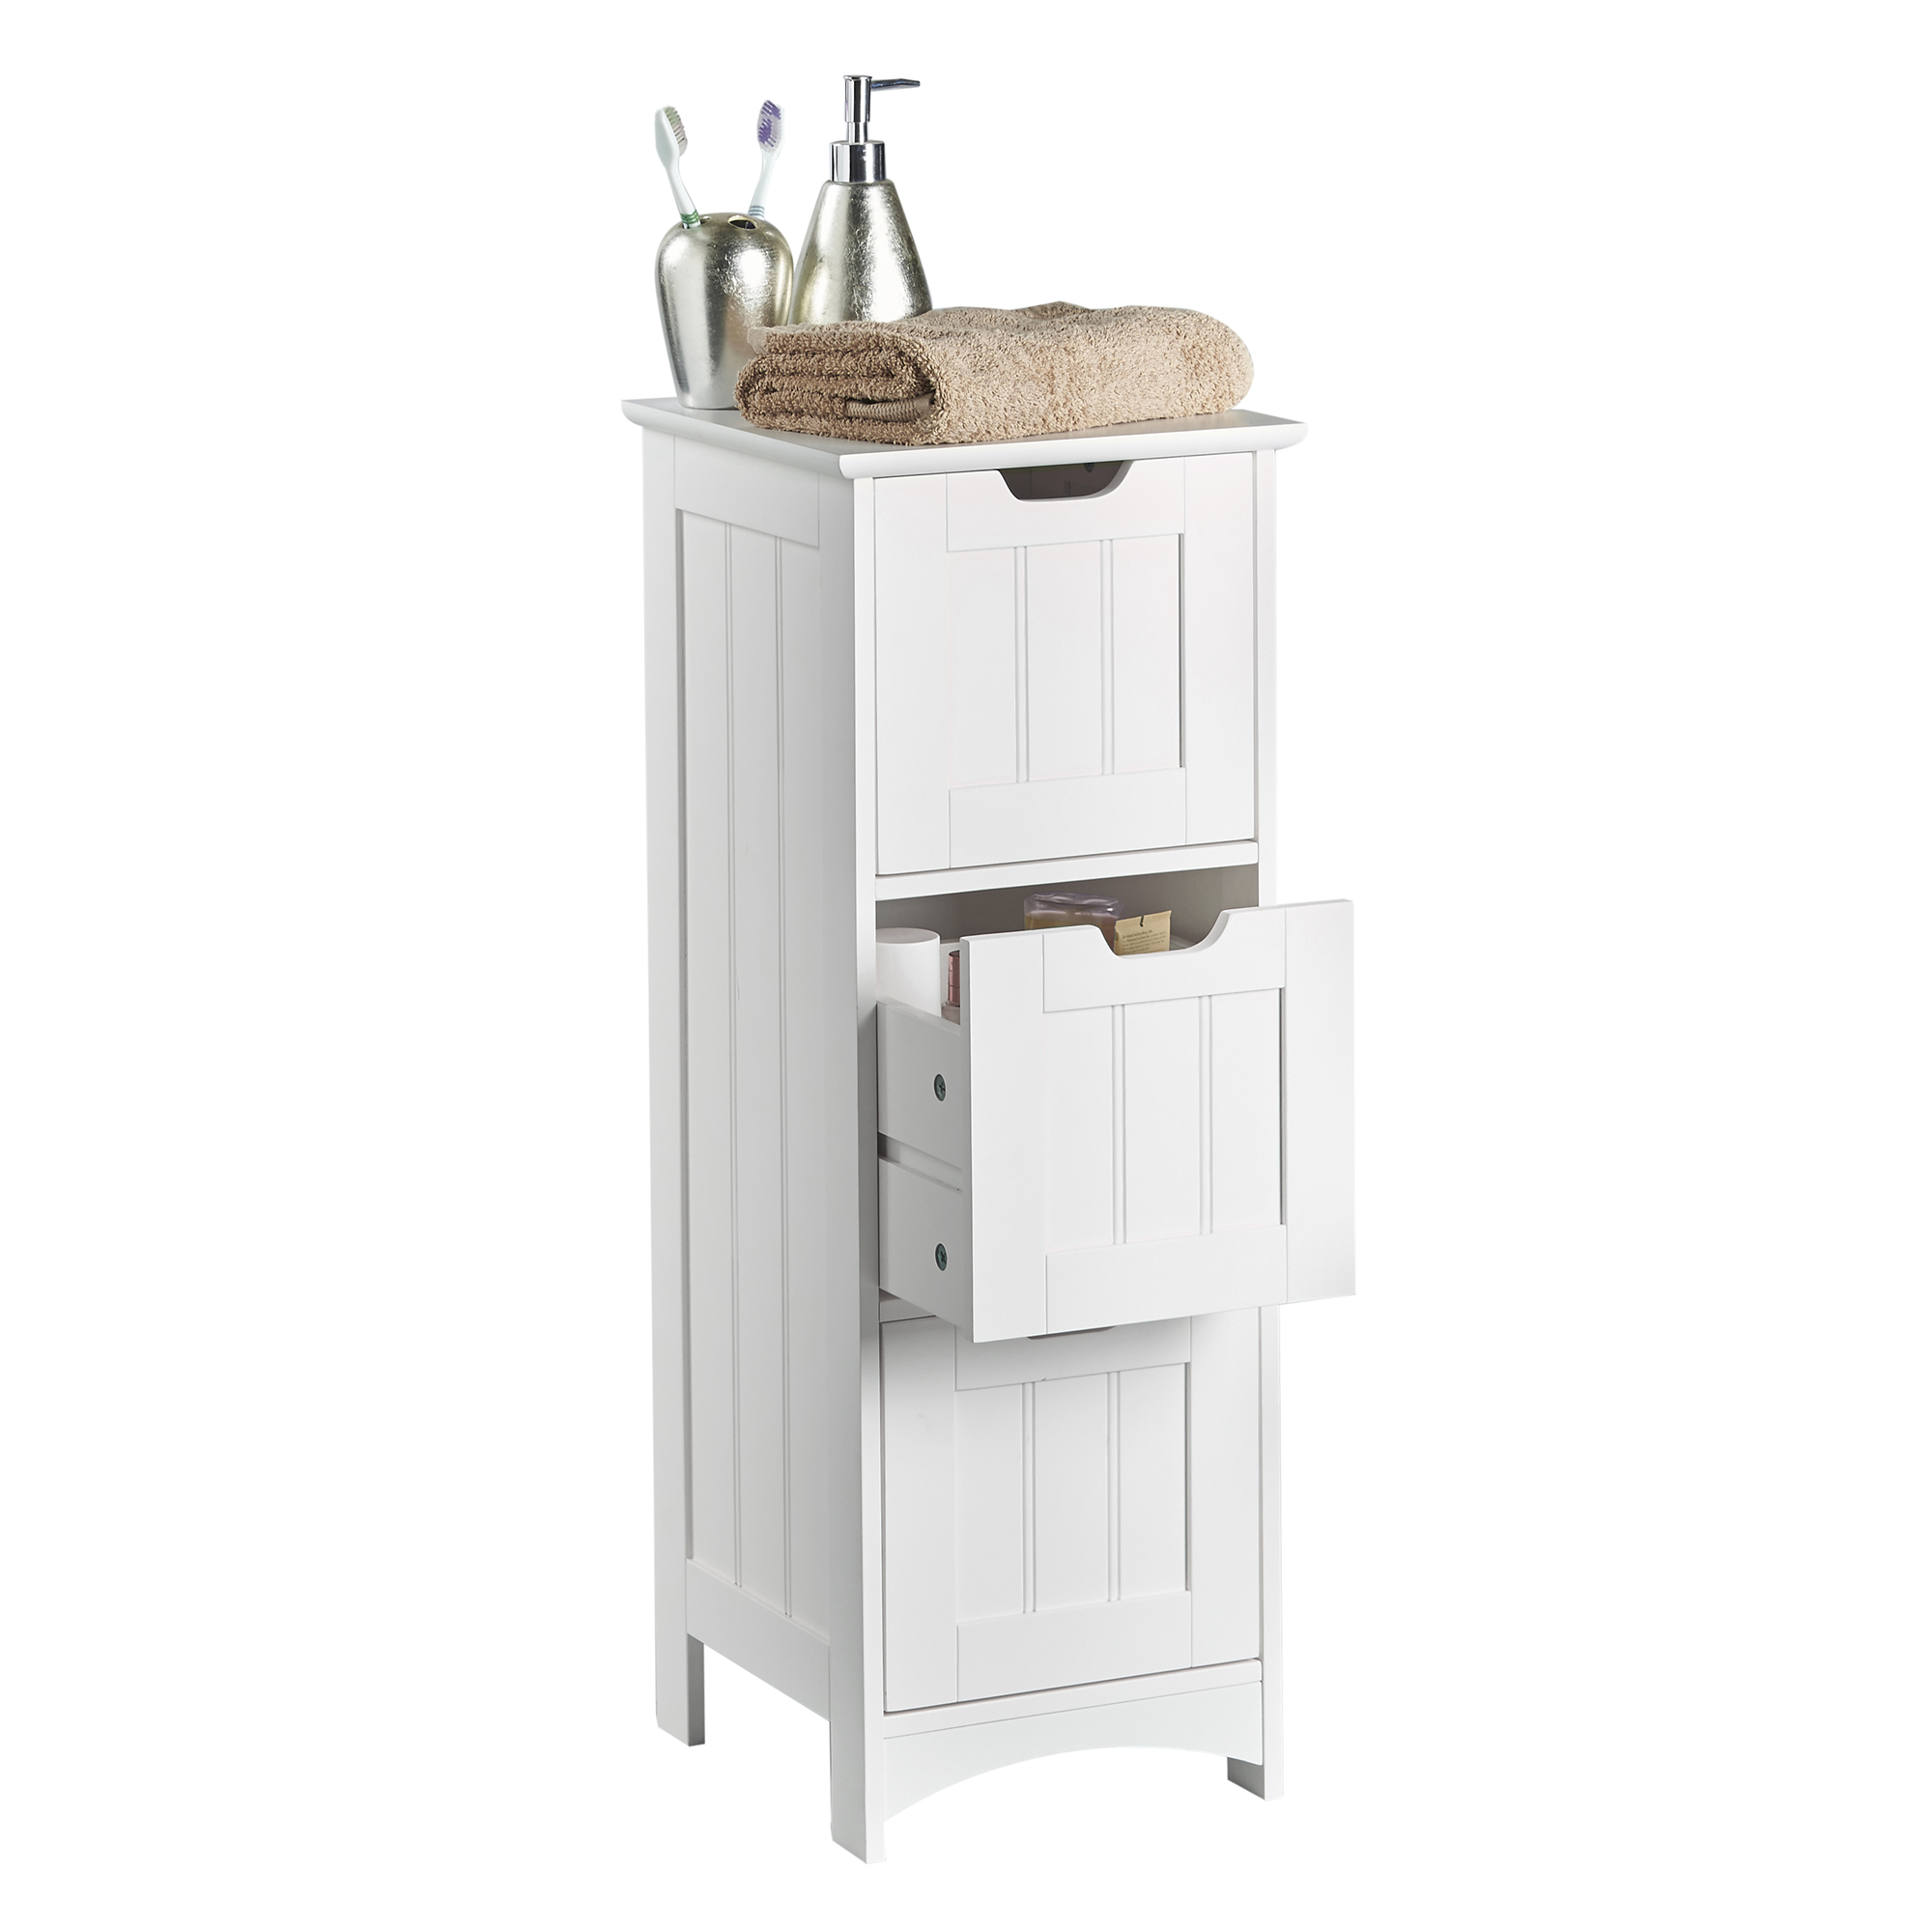 VonHaus Bathroom Storage Unit 3 Drawer Cupboard White Furniture